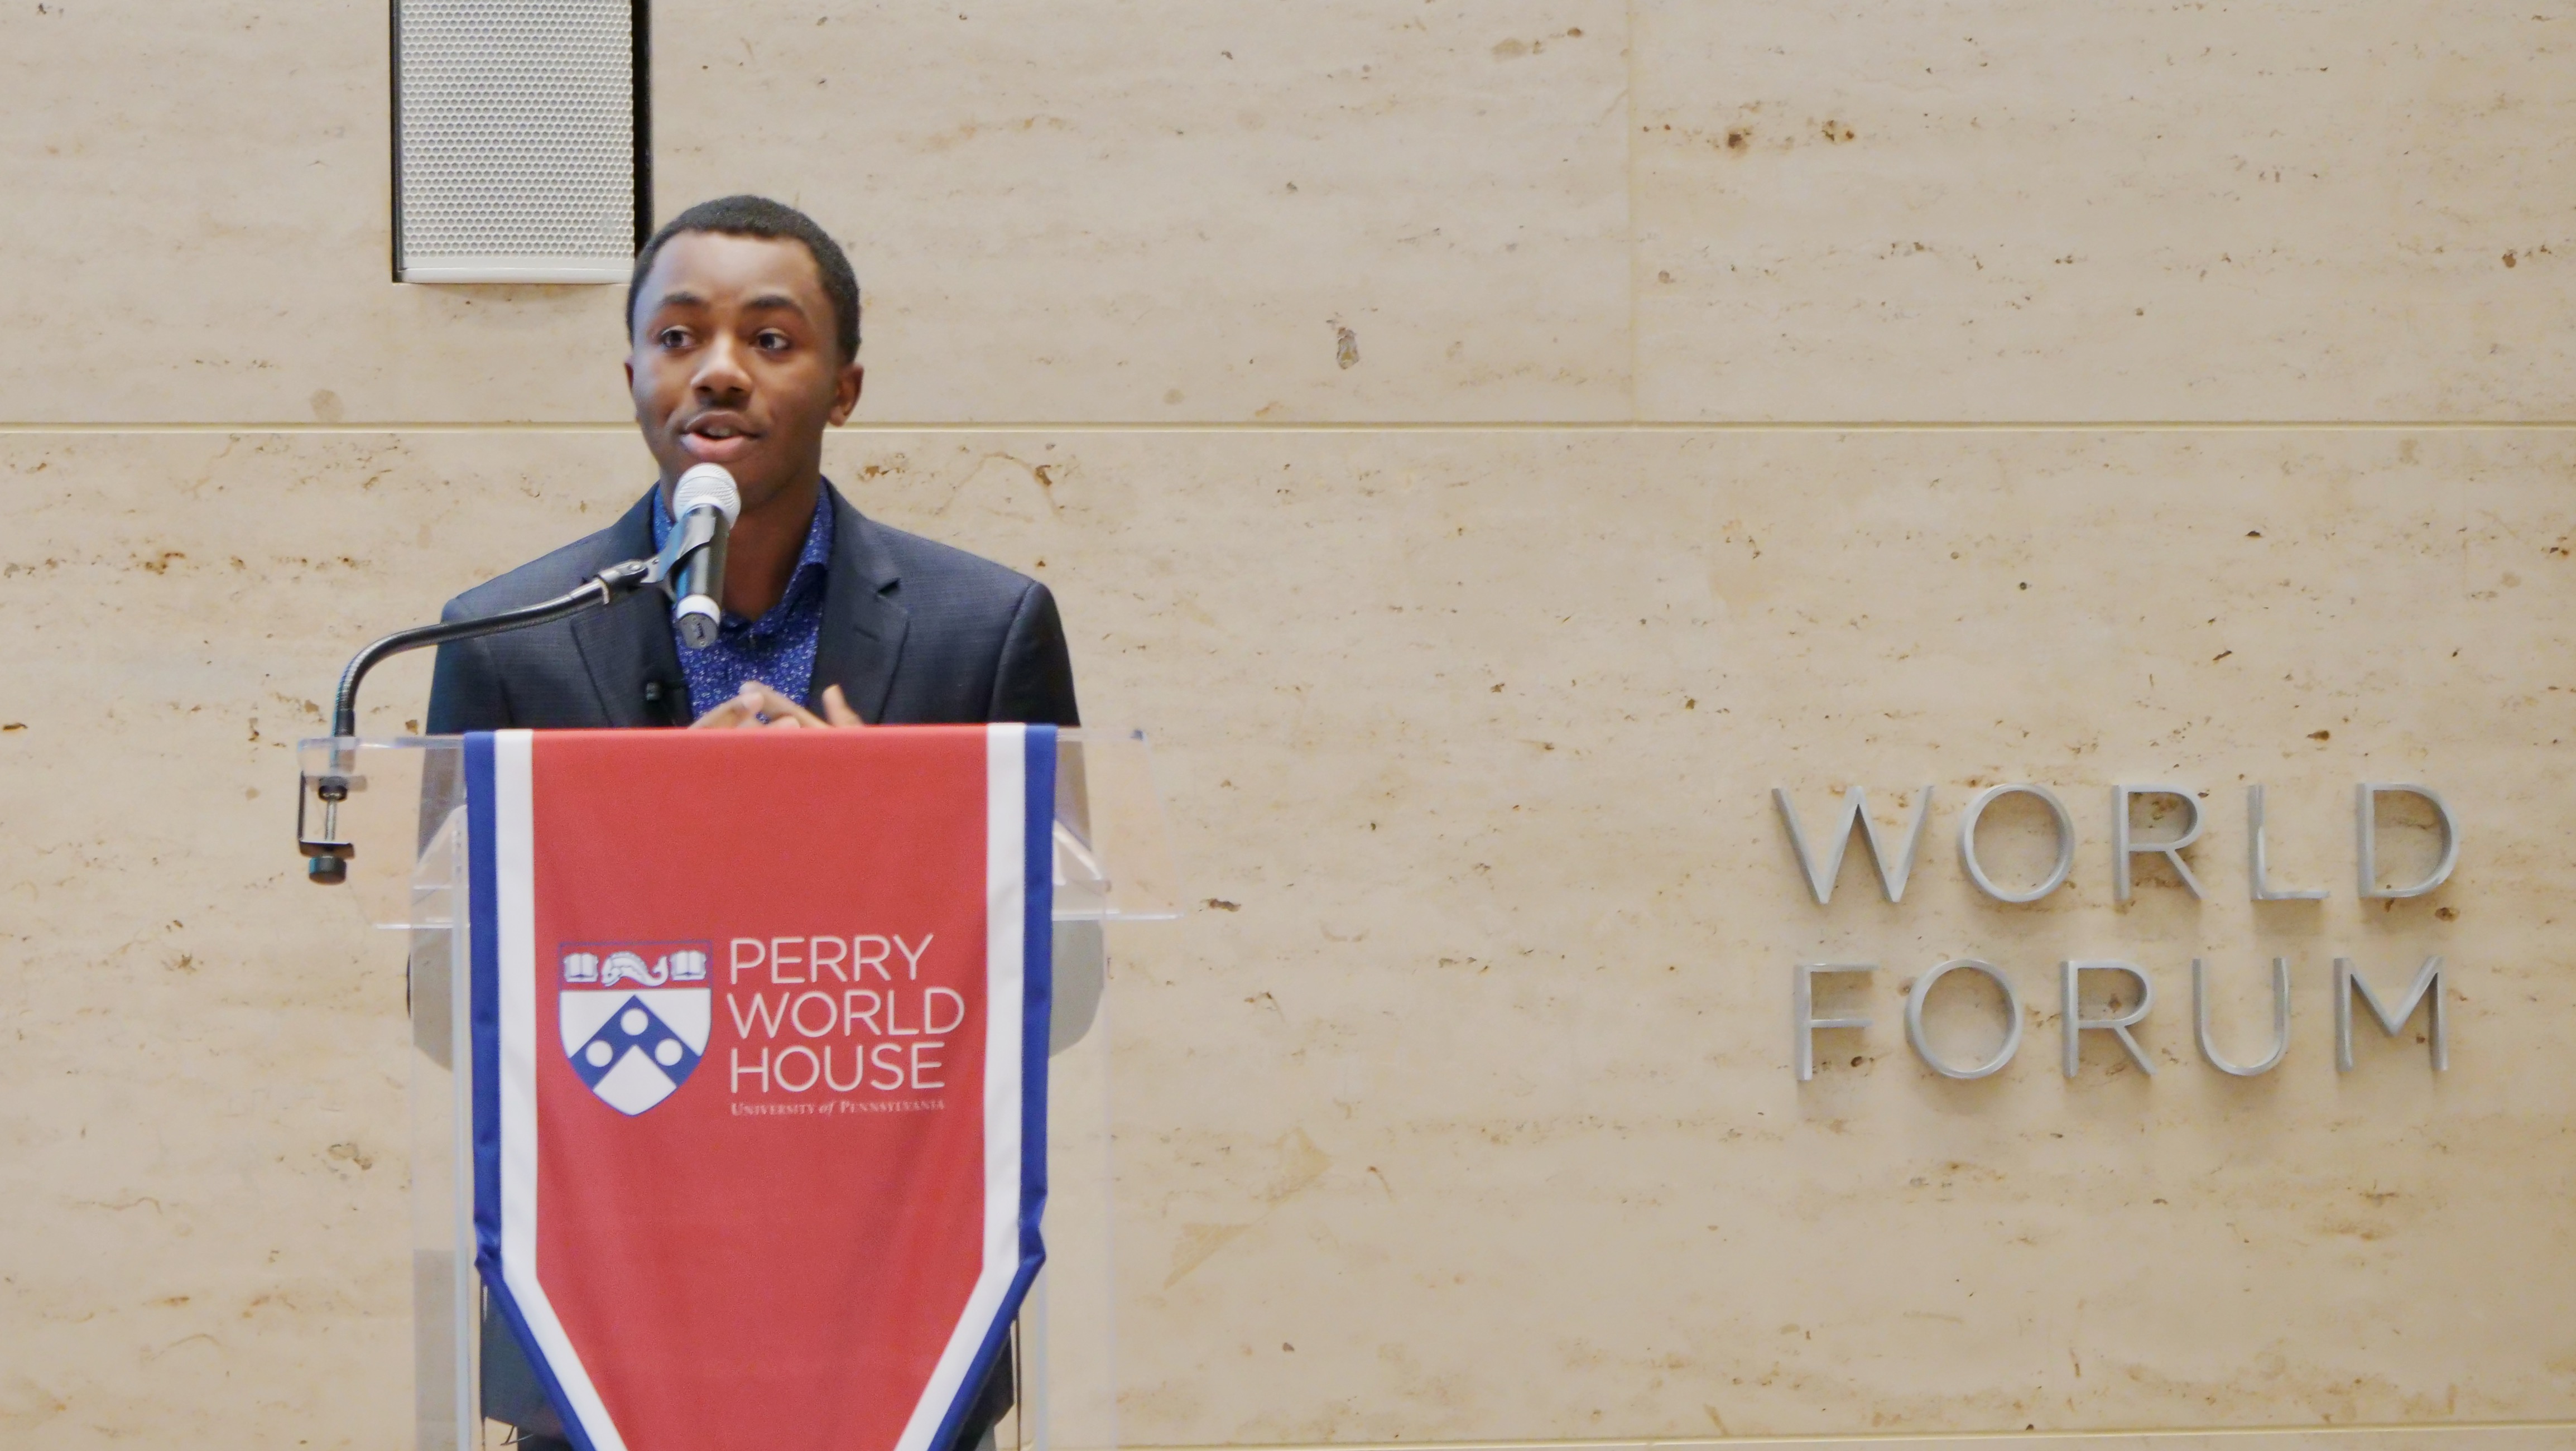 Student Sonari Chidi speaking at Perry World House podium.